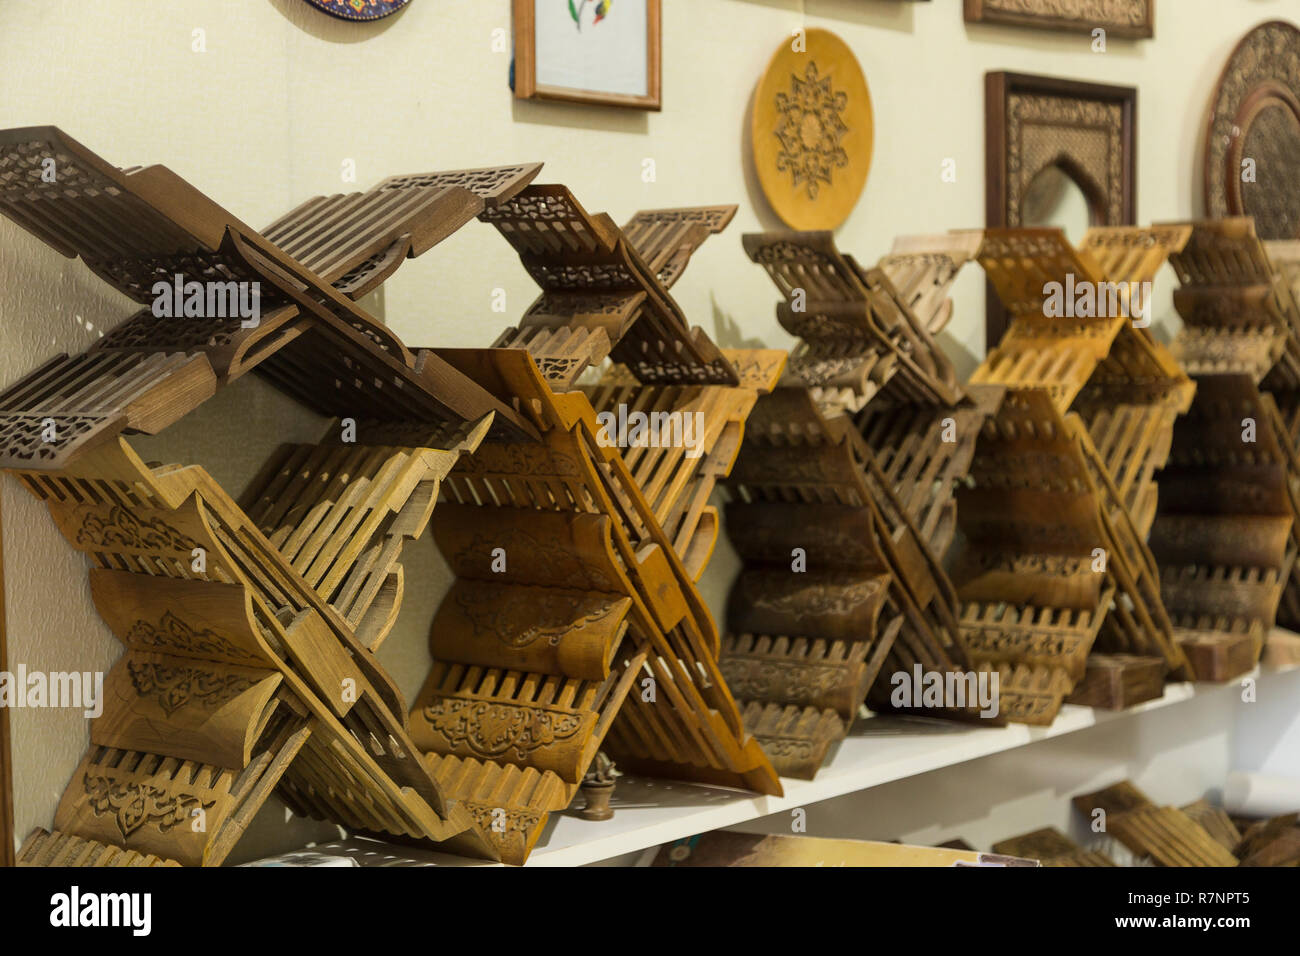 Store d'rihals ingénieux. Livre en bois se tient à Boukhara, Ouzbékistan. Holly Quran Kuran Coran livre est porteur de souvenirs. Belles oeuvres d'art, sculptée Banque D'Images